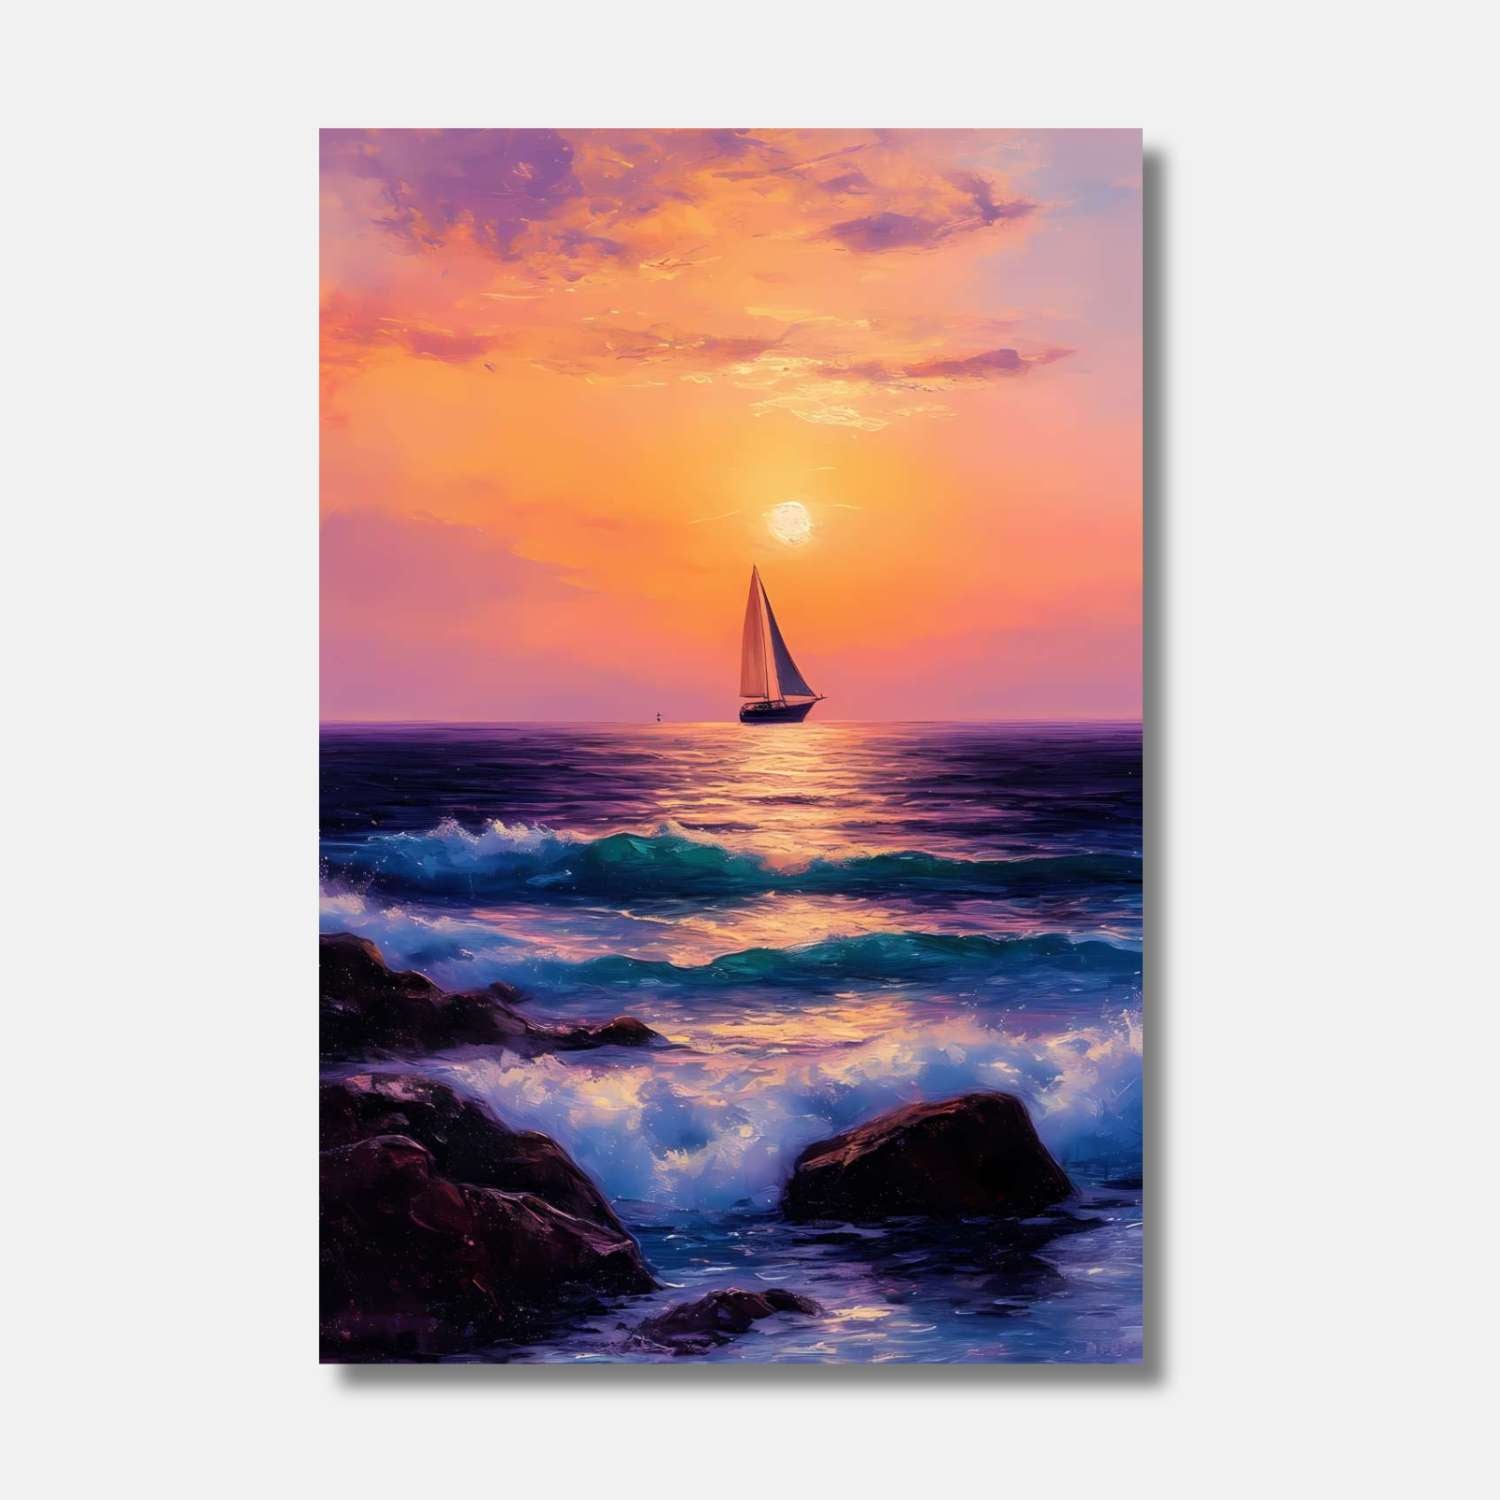 Un coucher de soleil vibrant sur une mer tranquille, où les vagues dansent doucement et un voilier glisse vers l'horizon doré